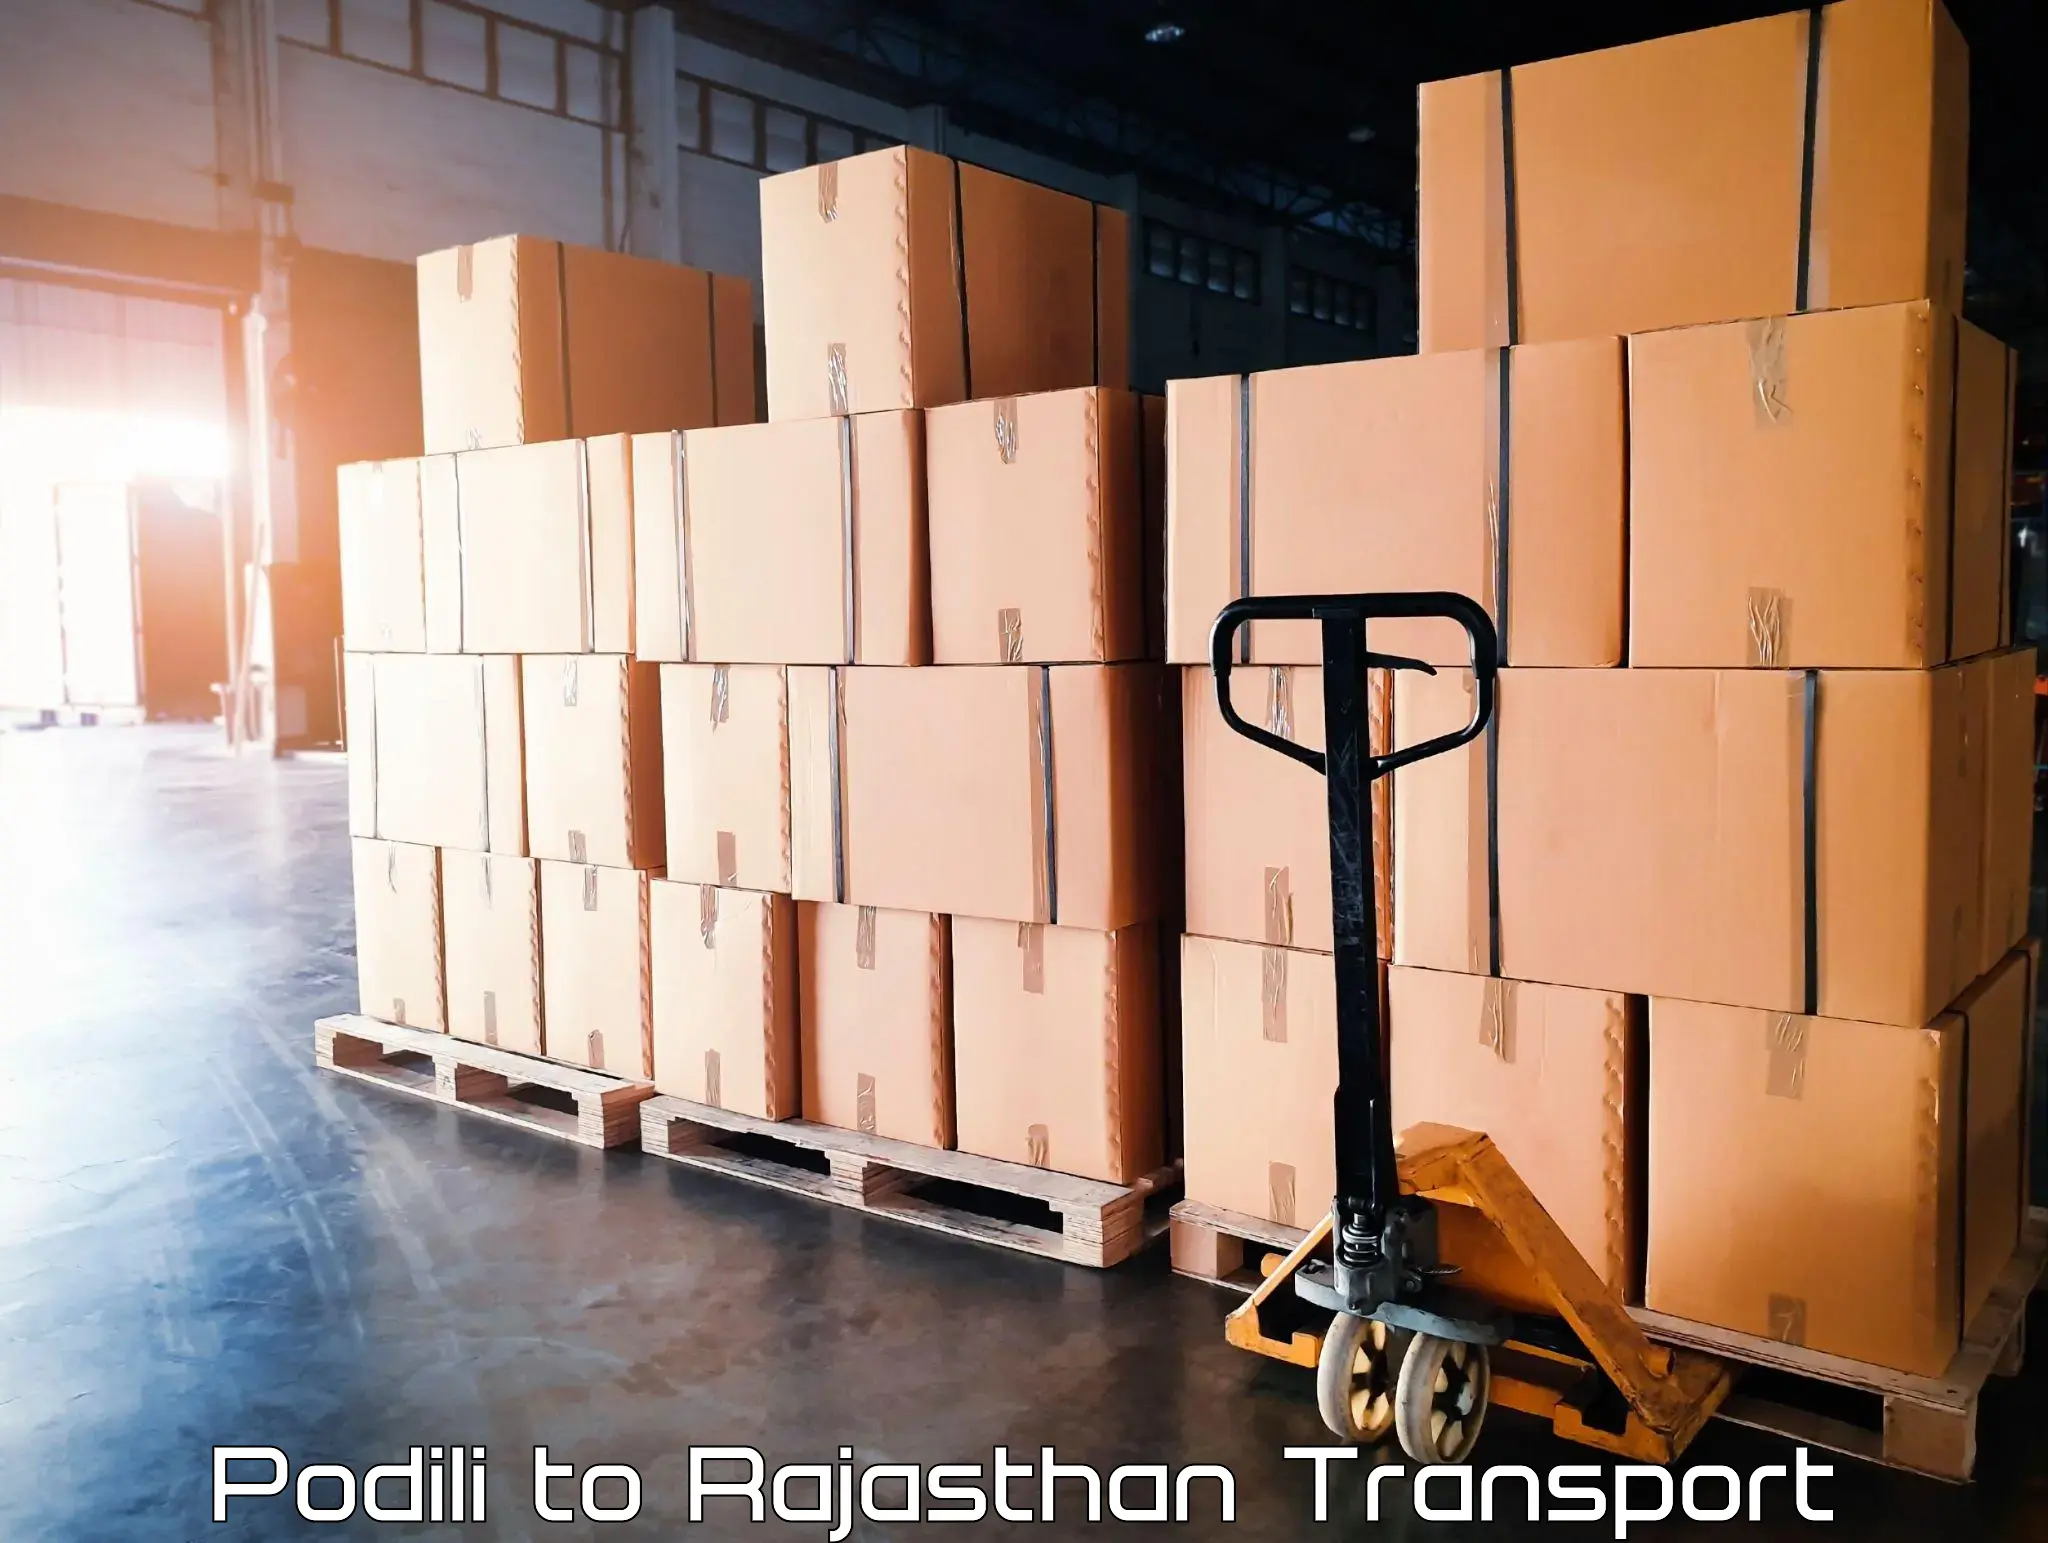 Daily parcel service transport Podili to Sojat